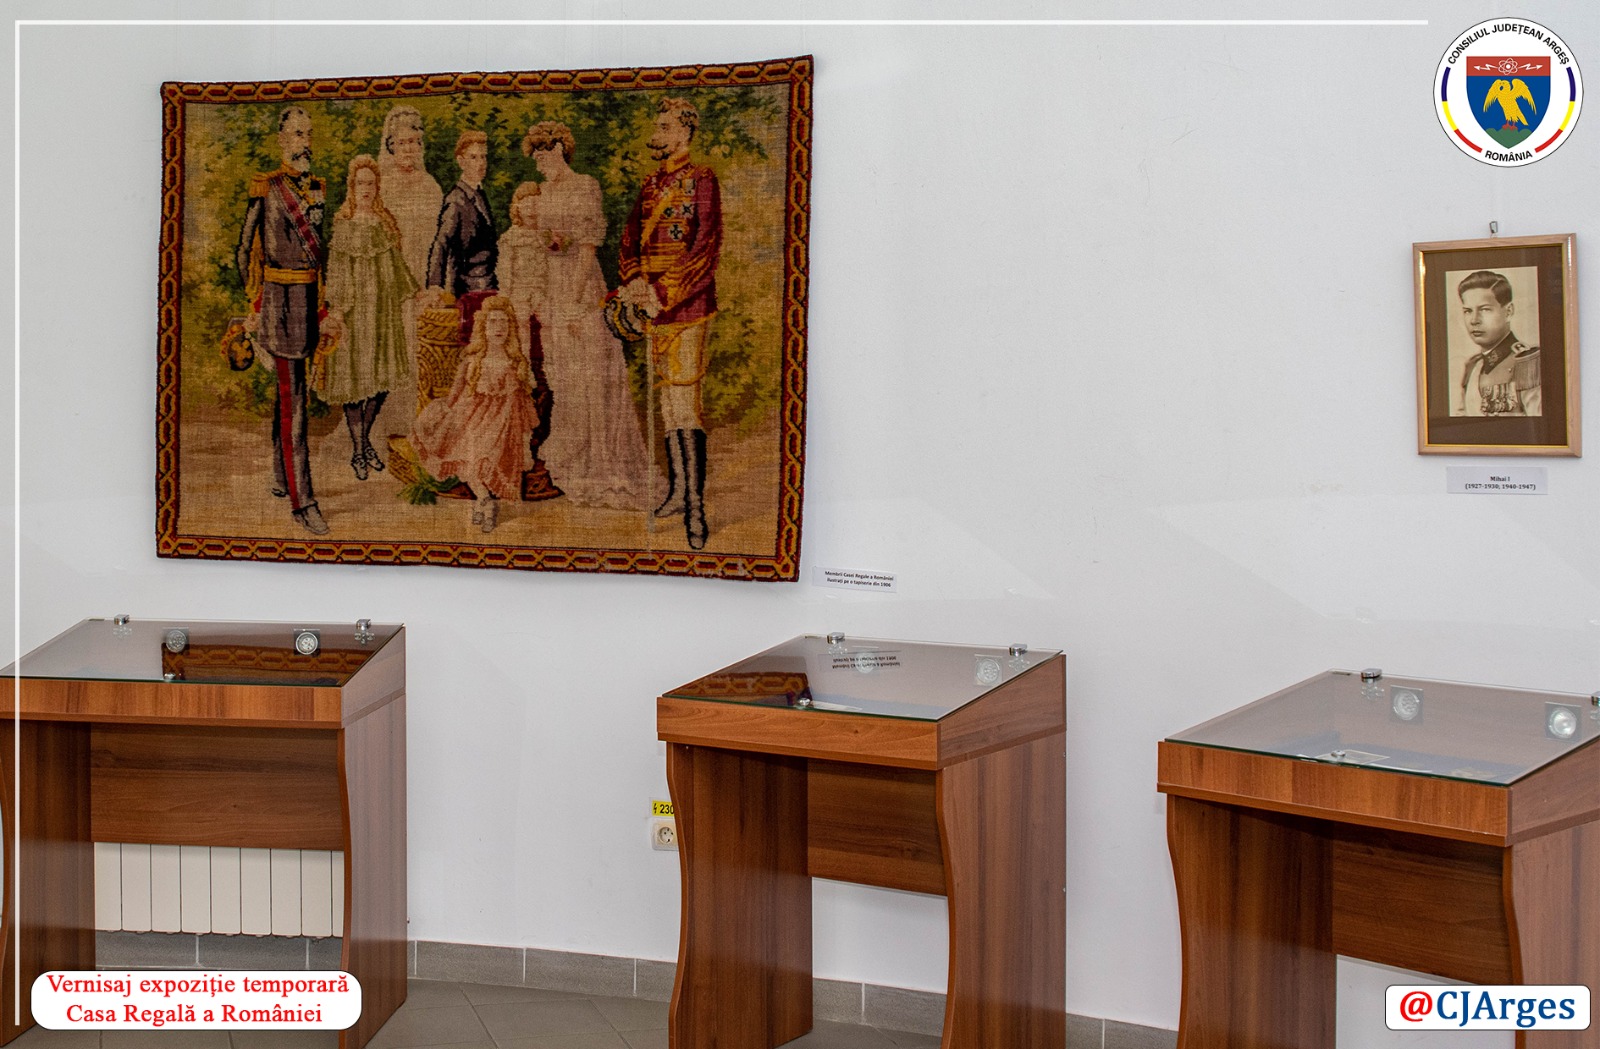 Argeșul pe primul loc! Casa Regală a României prezentată prin fotografii, tablouri sau alte obiecte inedite!